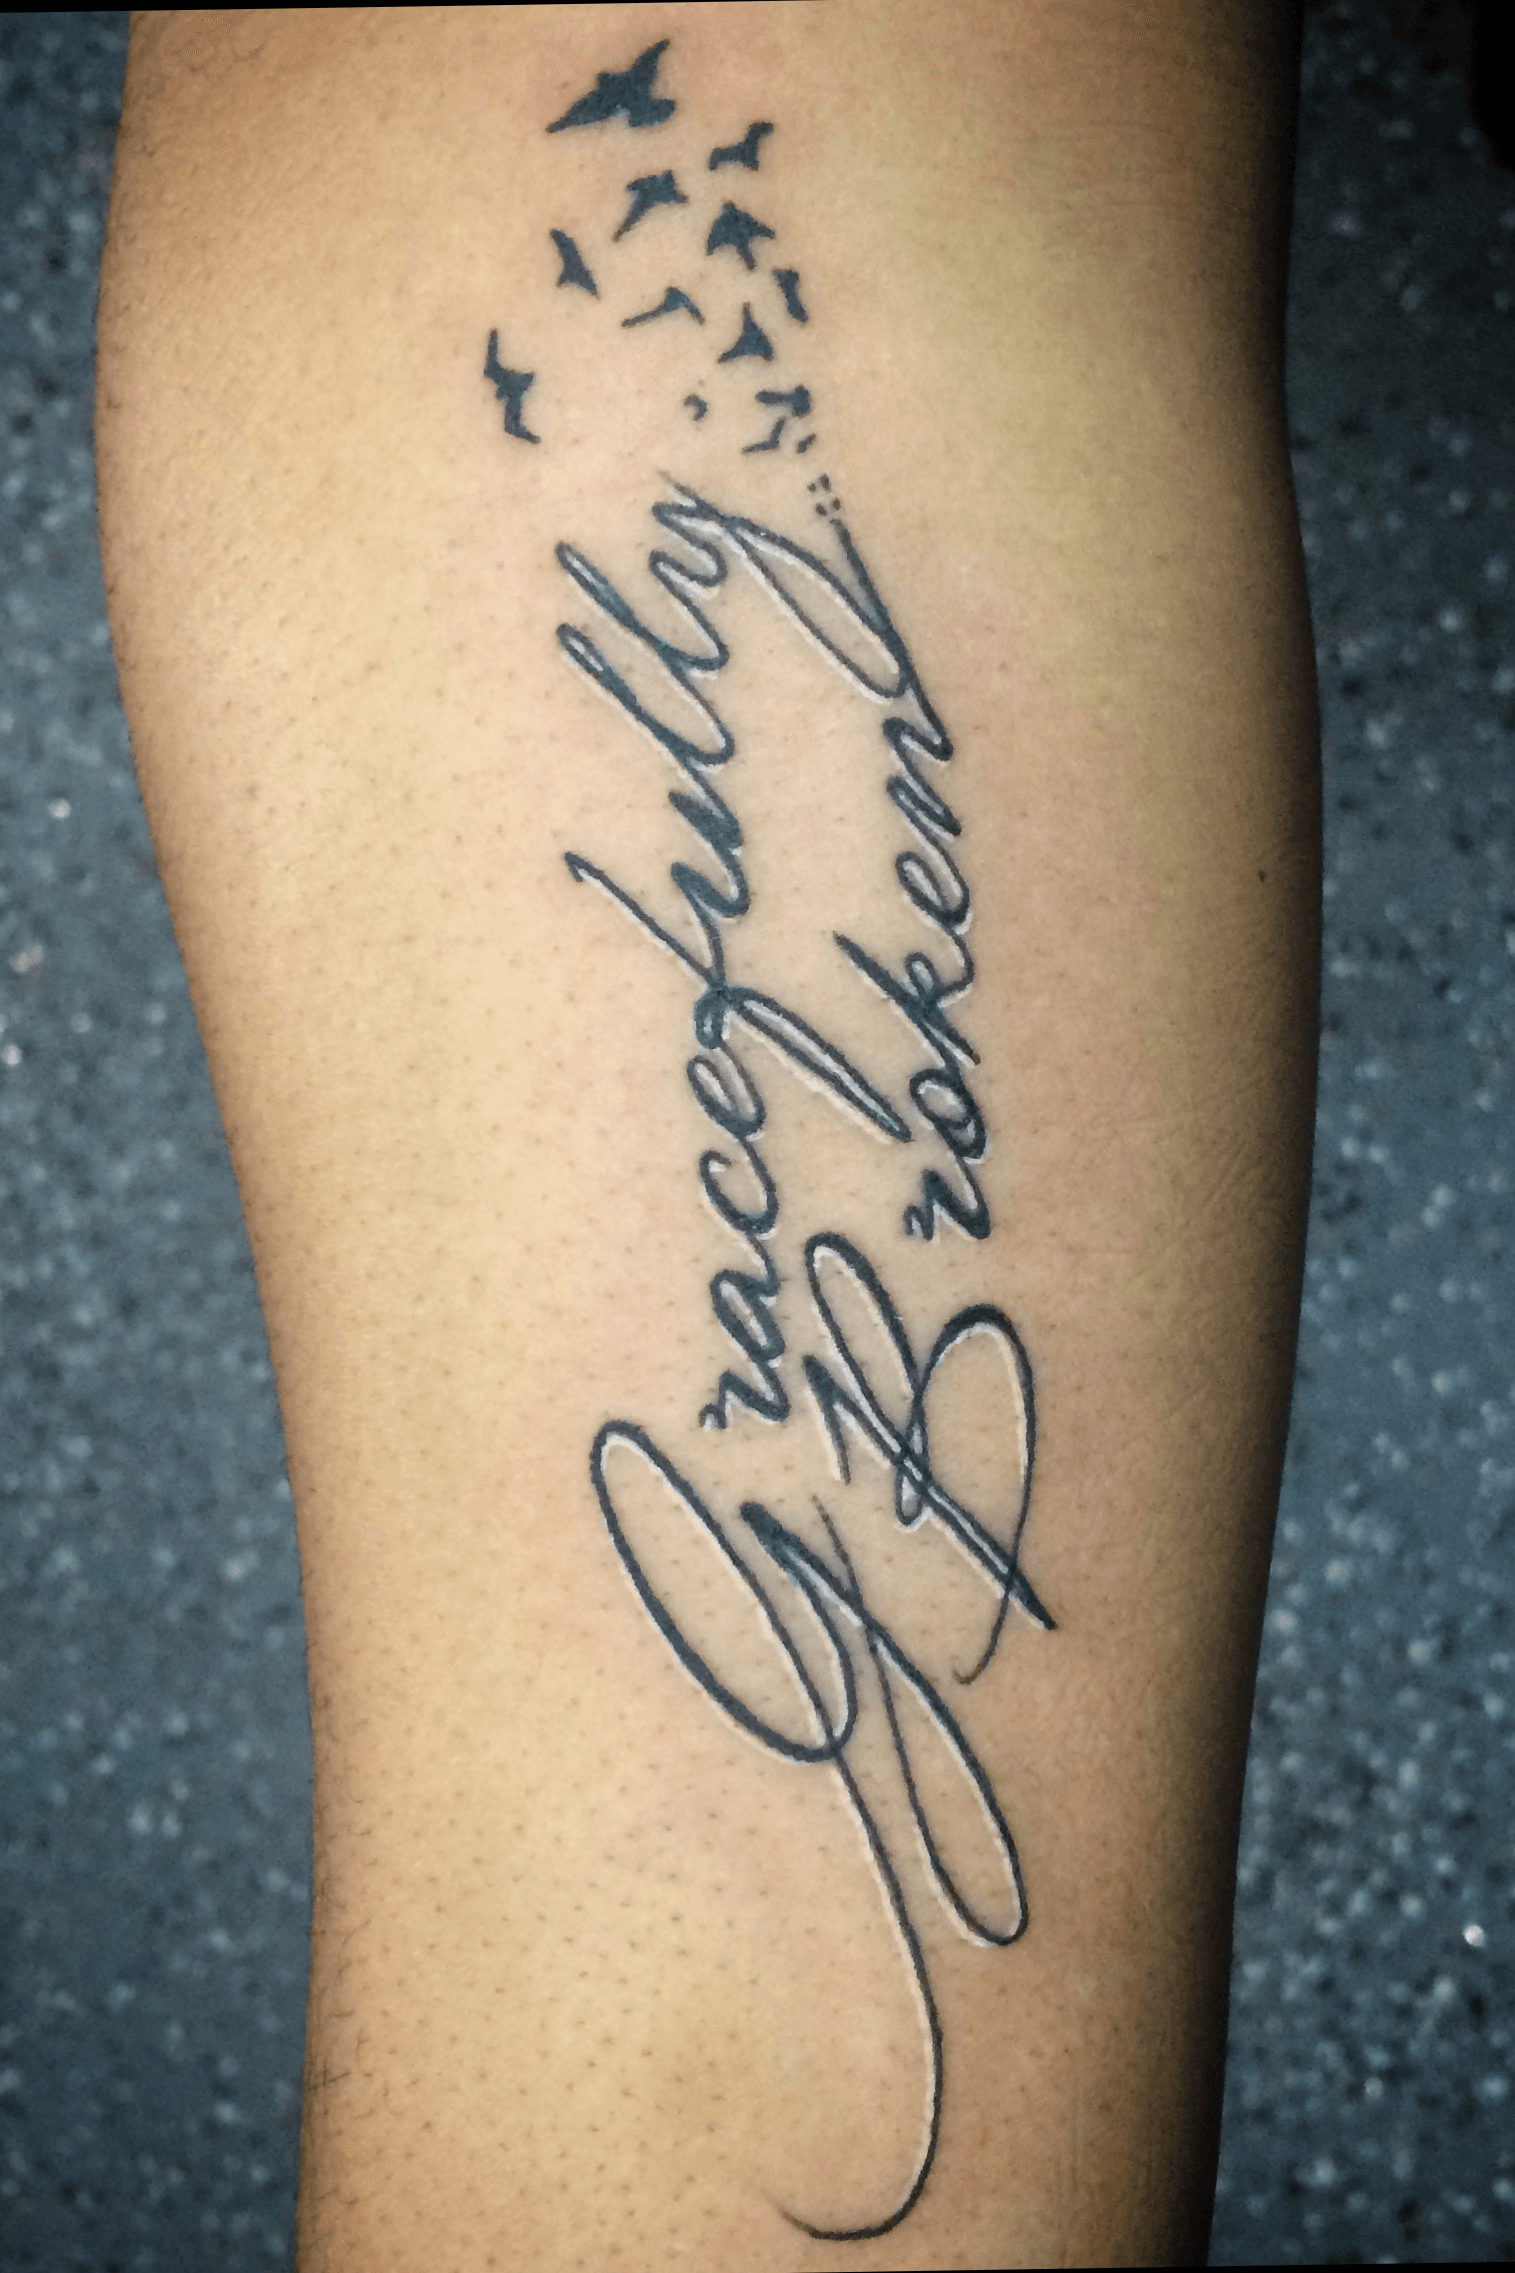 Tattoo uploaded by Danny Lee  Gracefully broken forearm tattoo  Tattoodo